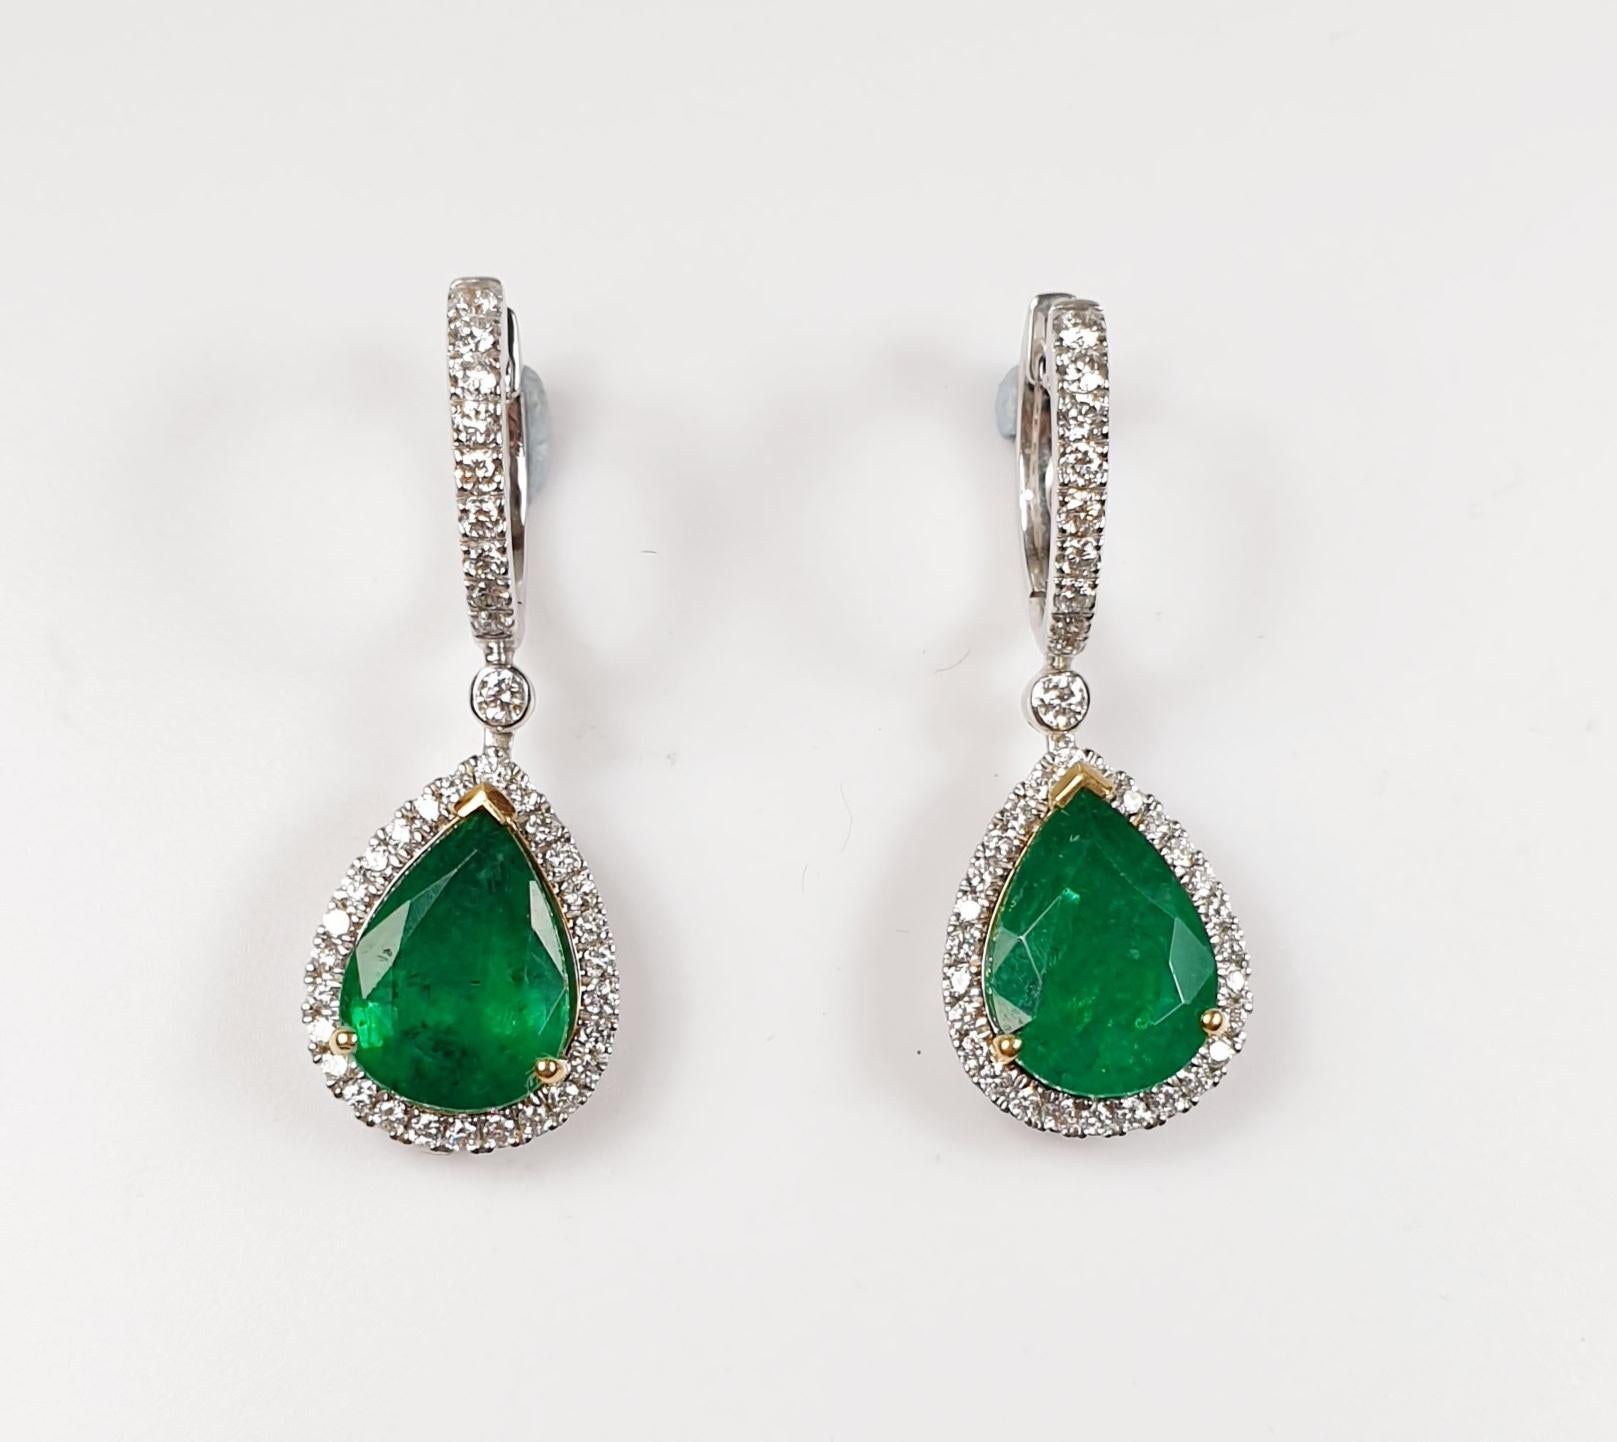 Birnenförmiger kolumbianischer Smaragd 6,60ct insgesamt  creolen mit Diamanten Ohrringe  und Weißgold

Irama Pradera ist eine junge Designerin aus Spanien, die immer auf der Suche nach den besten Edelsteinen ist und klassische mit zeitgenössischen